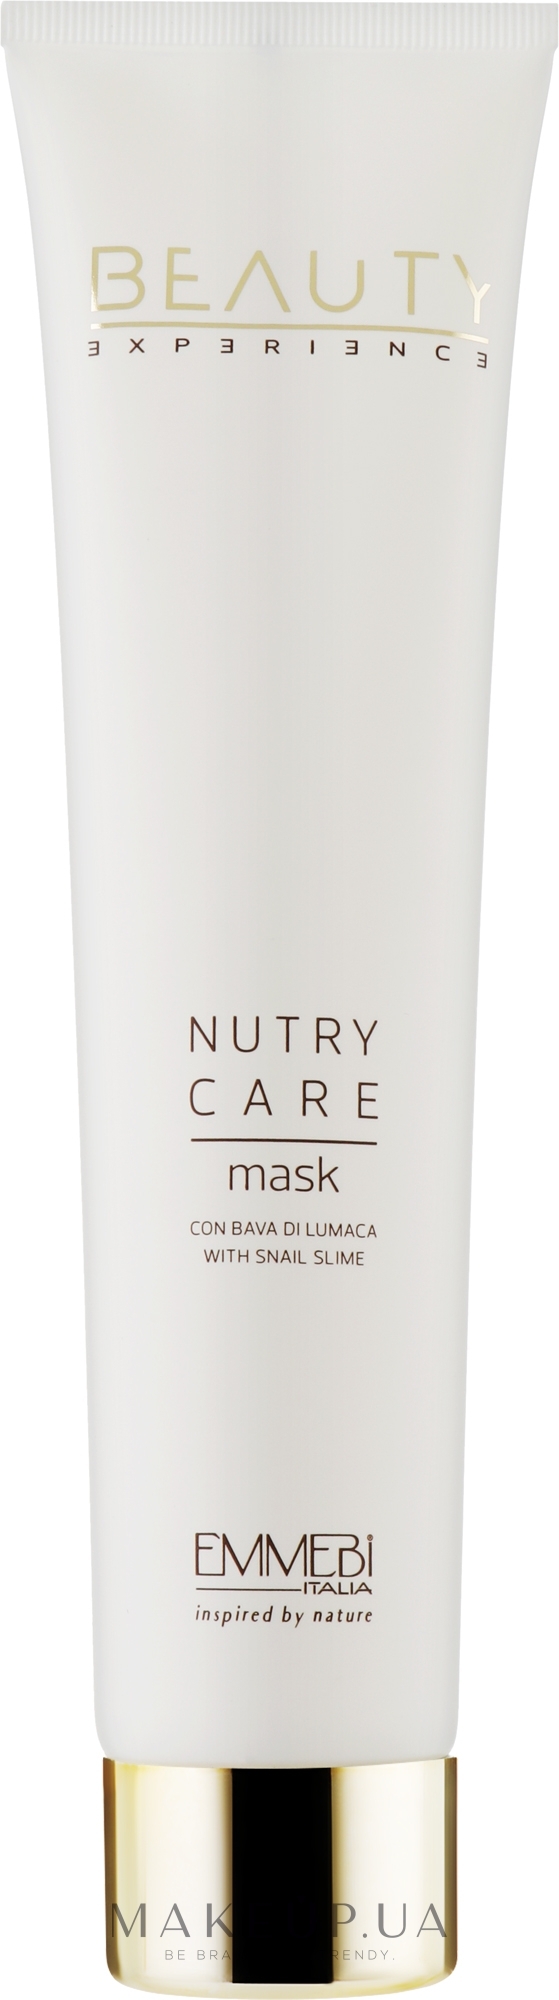 Маска для волосся - Emmebi Italia Beauty Experience Mask — фото 200ml